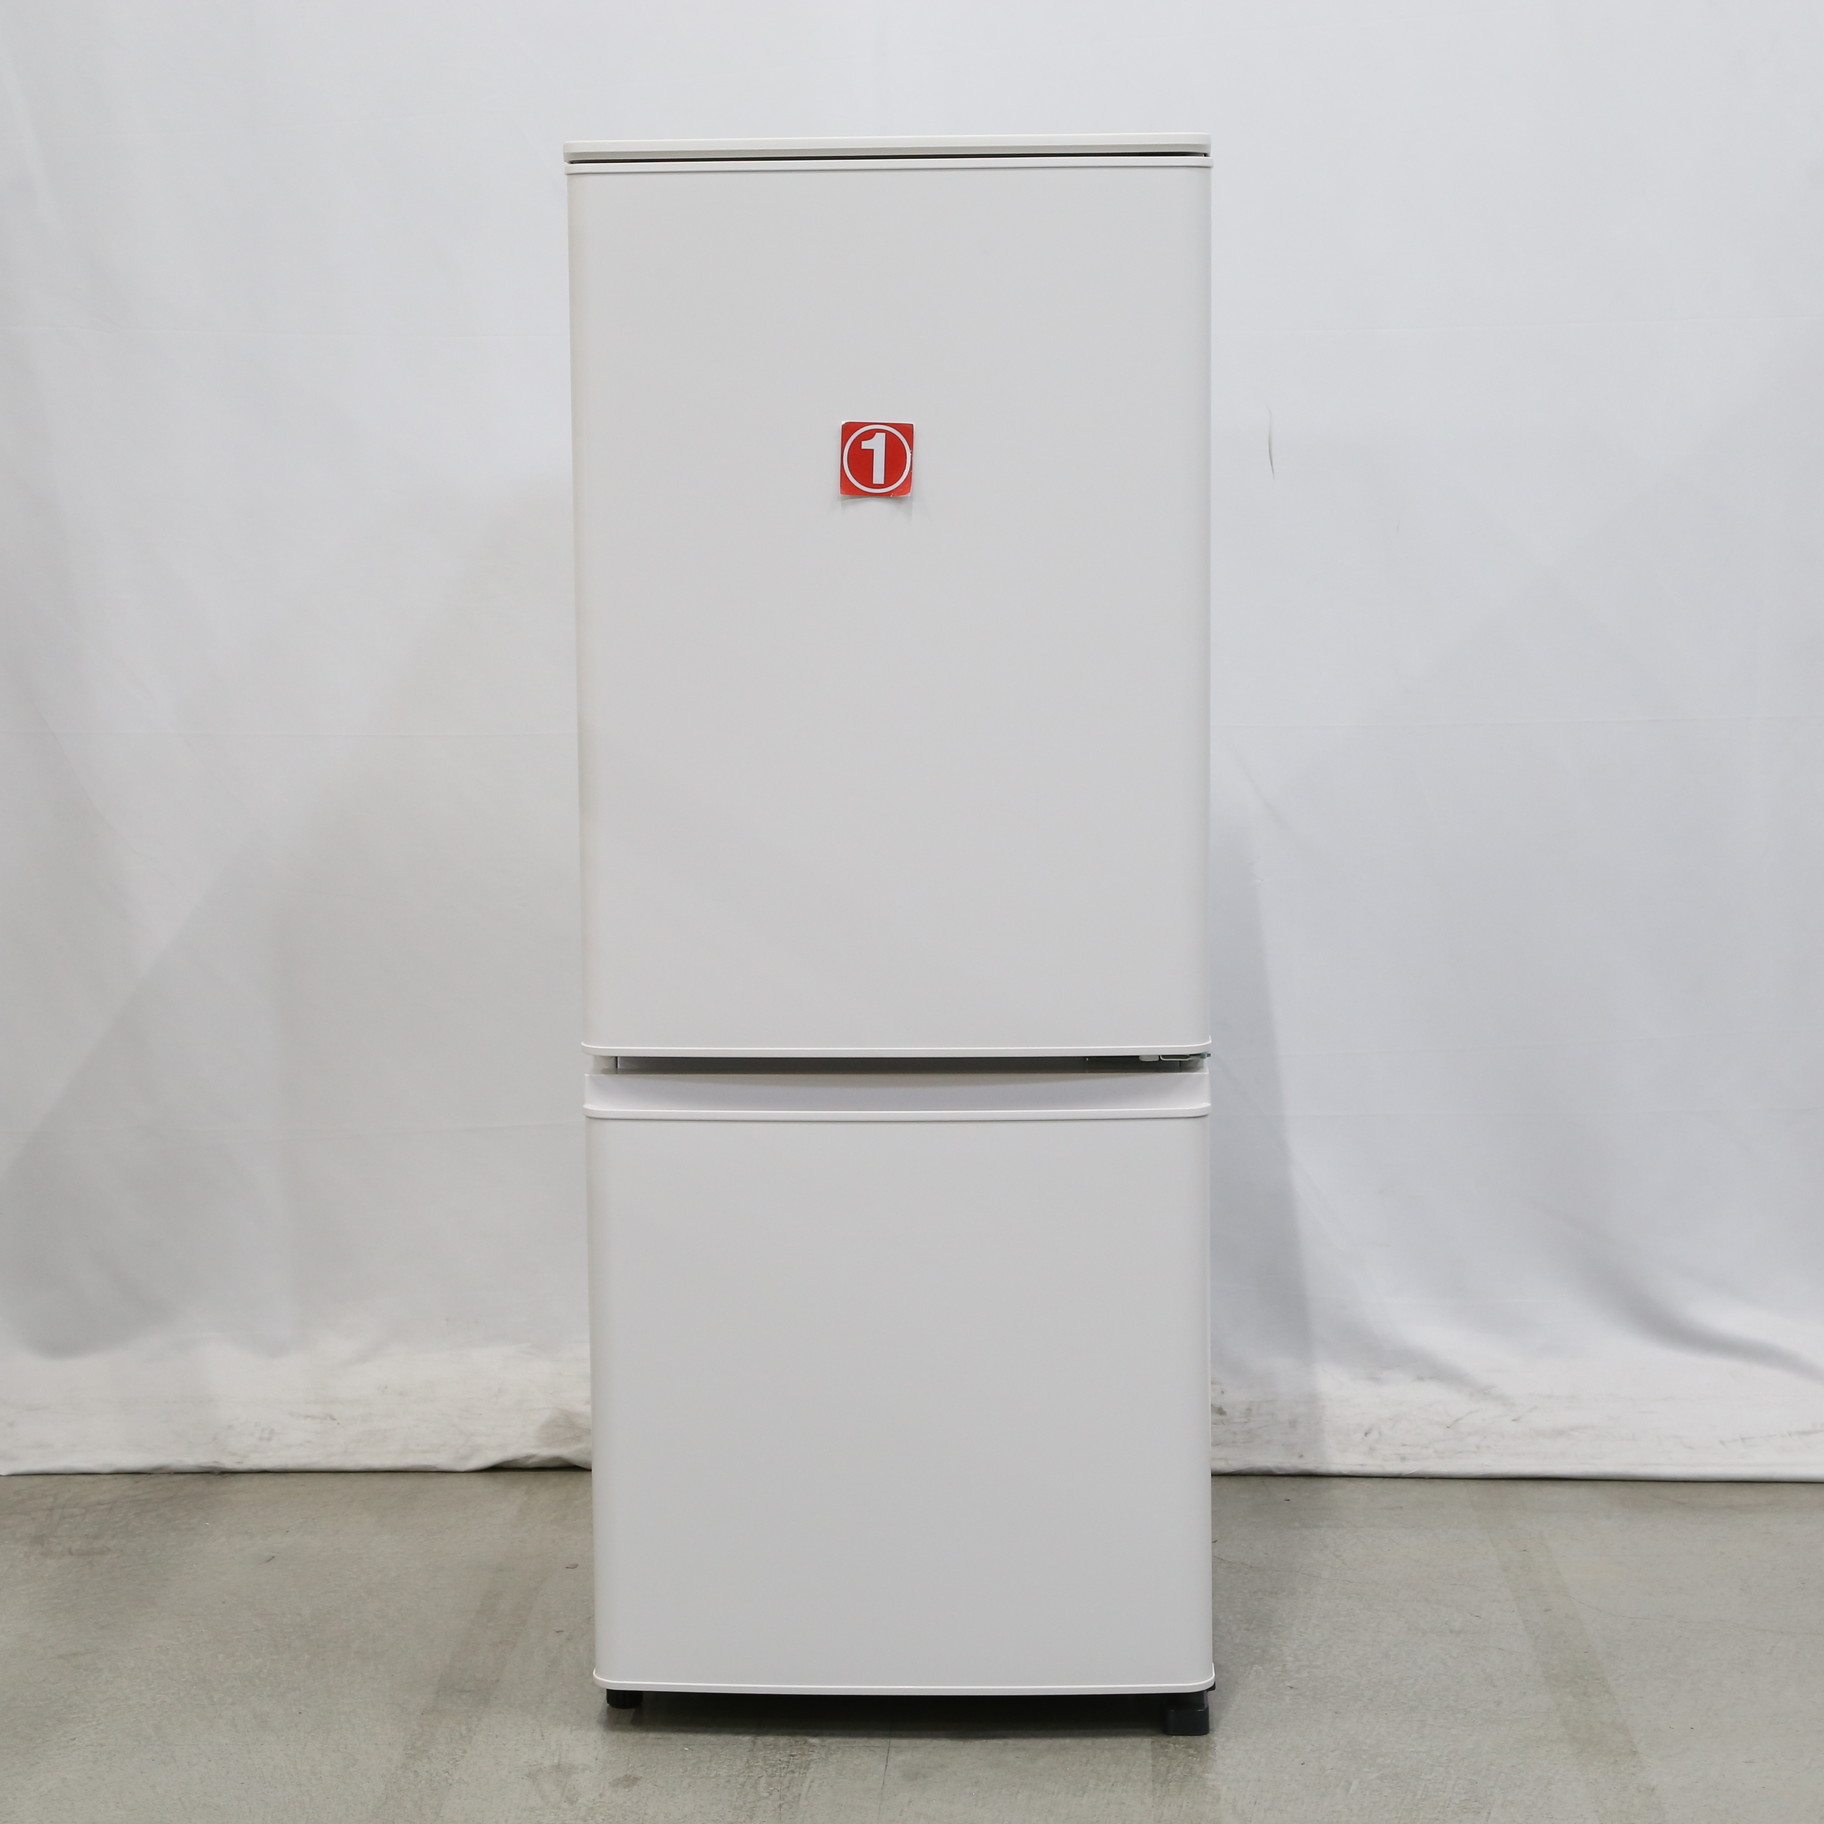 2021年製 MITSUBISHI 三菱 冷凍冷蔵庫 MR-P15G-W - 冷蔵庫